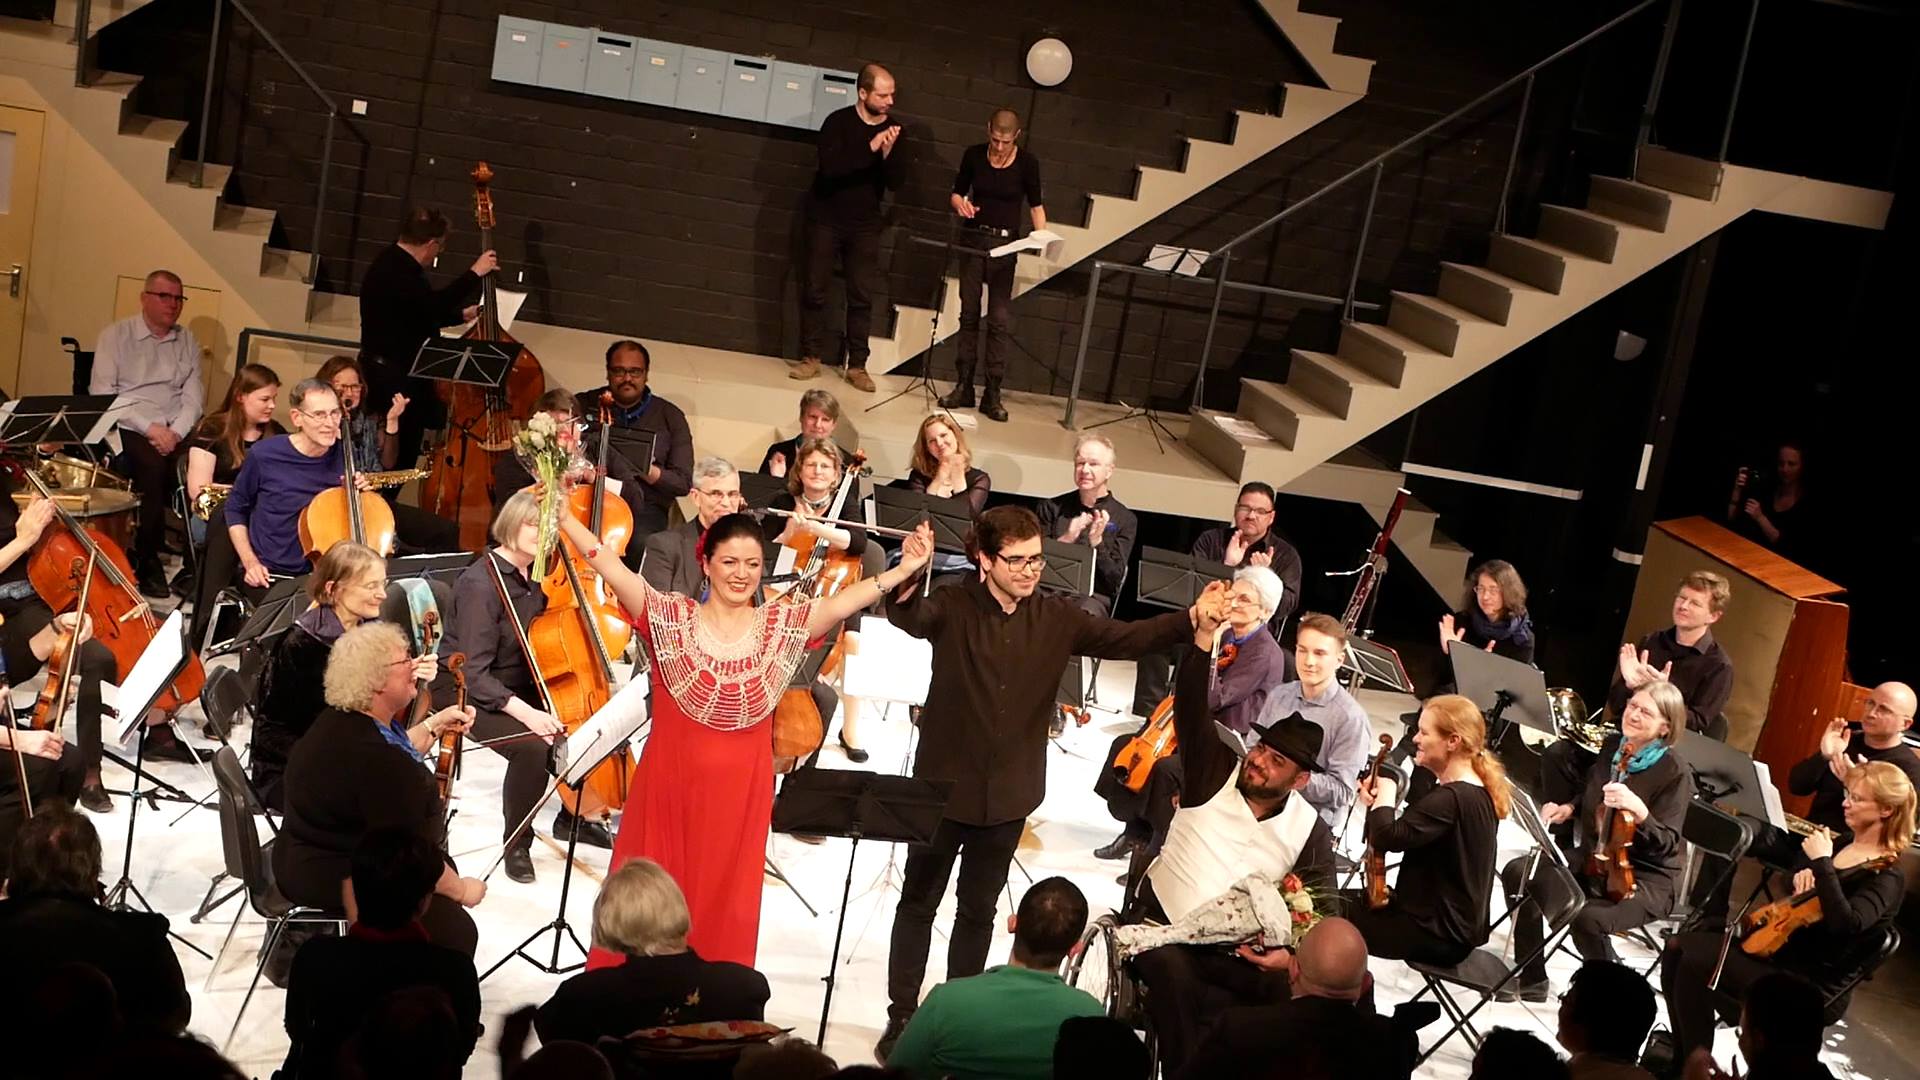 Das Foto zeigt das Utopia Orchester beim Schlussapplaus nach dem Konzert am 30.4.2019 im Berliner GRIPS Theater. Vor dem Orchester sieht man den Dirigenten Mariano Domingo mit zwei tollen Gesangs-SolistInnen: Kristina Gordadze und Artak Kirakosyan.